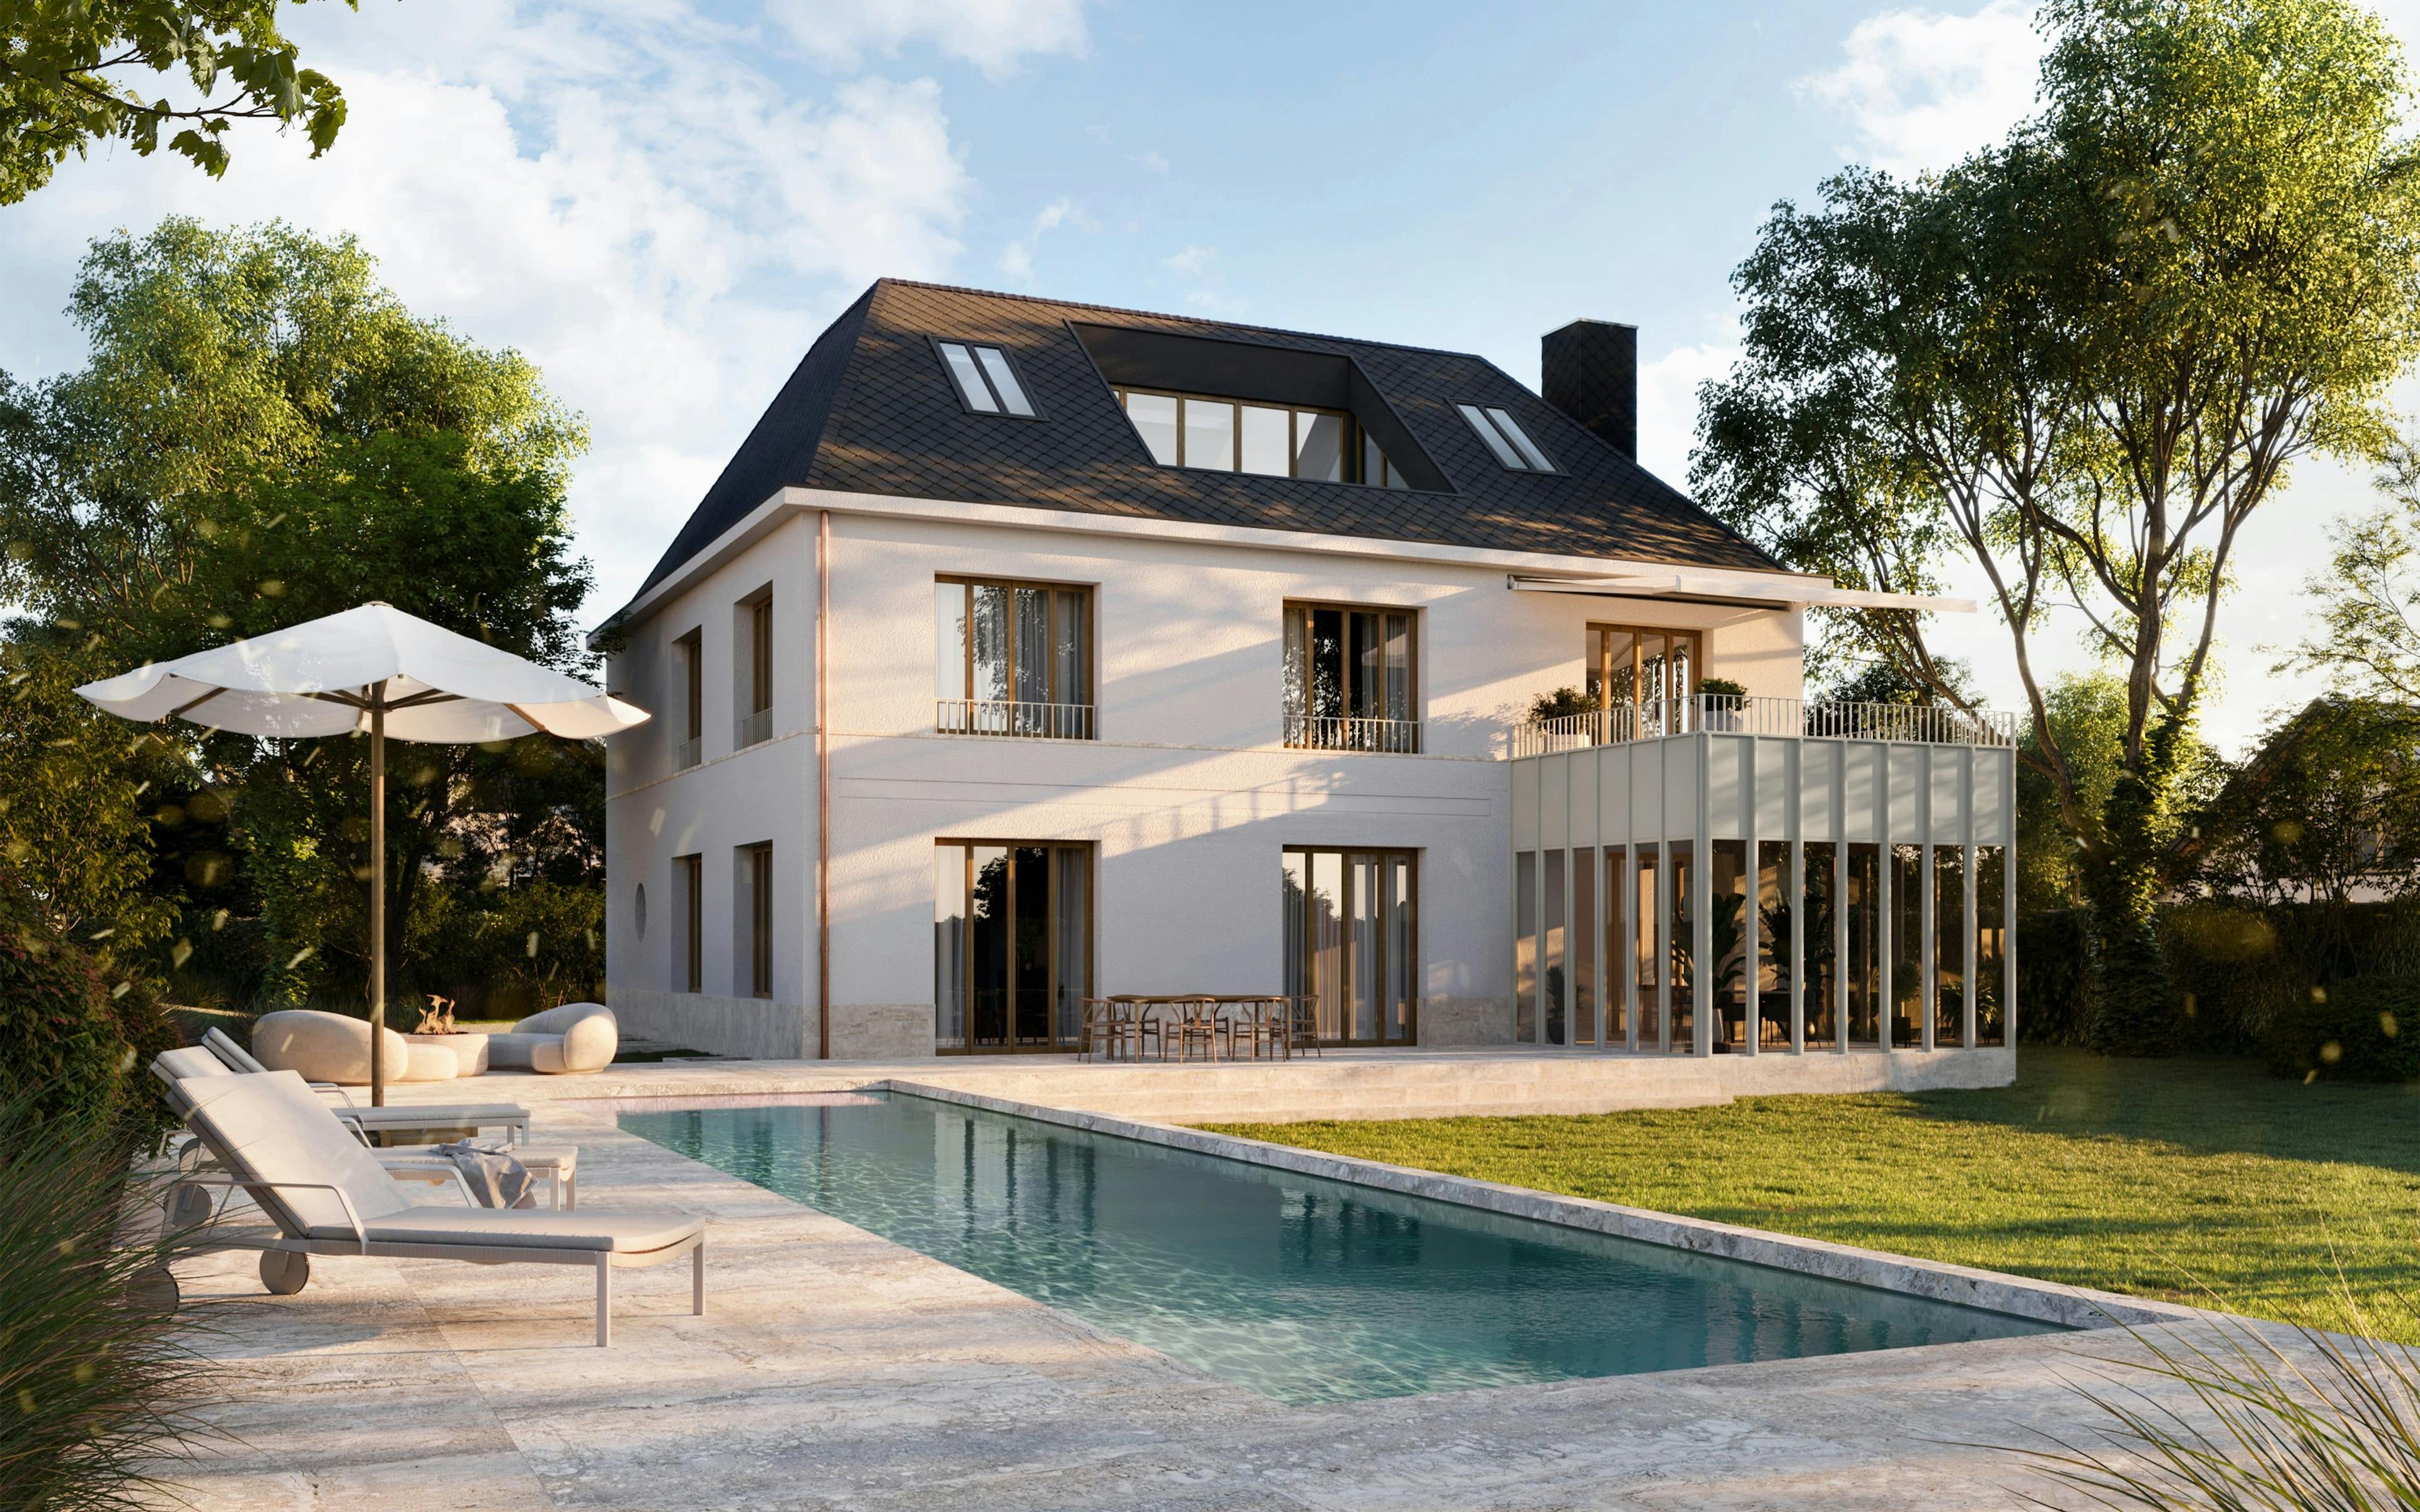 3D Architekturvisualisierung eines privaten, eleganten Hauses mit Pool und Fassadenvarianten